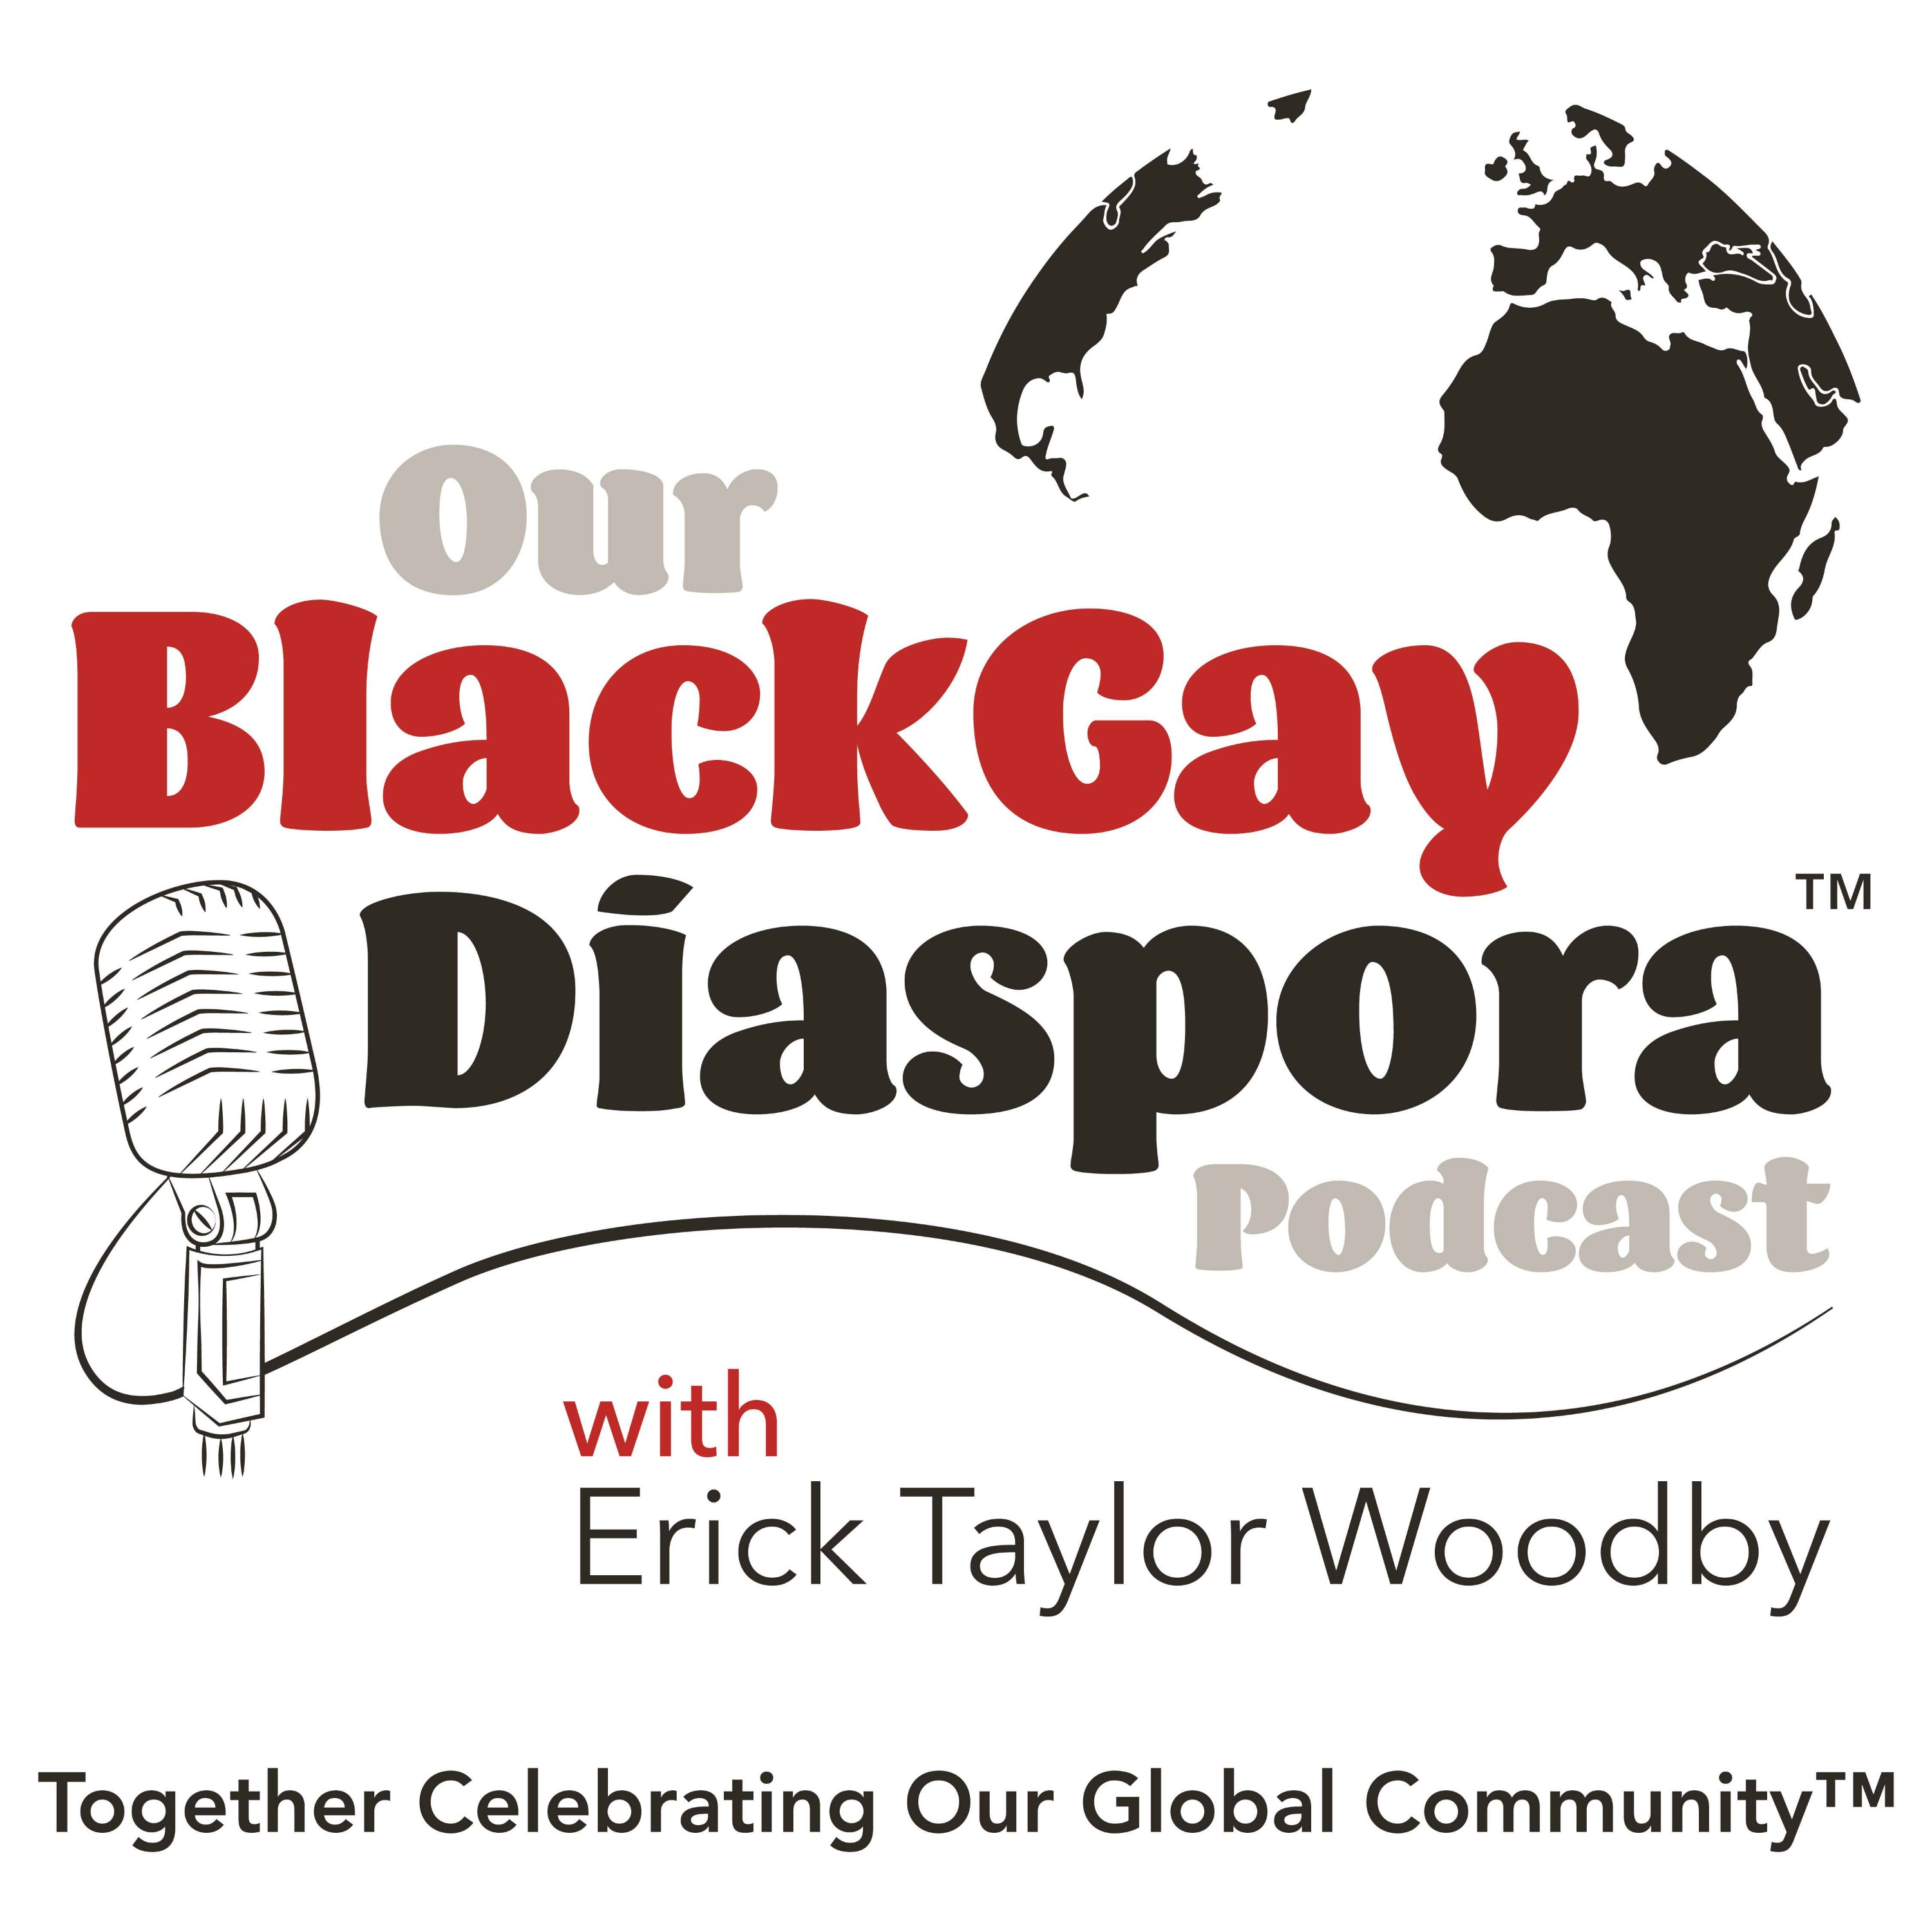 Our Black Gay Diaspora Podcast™